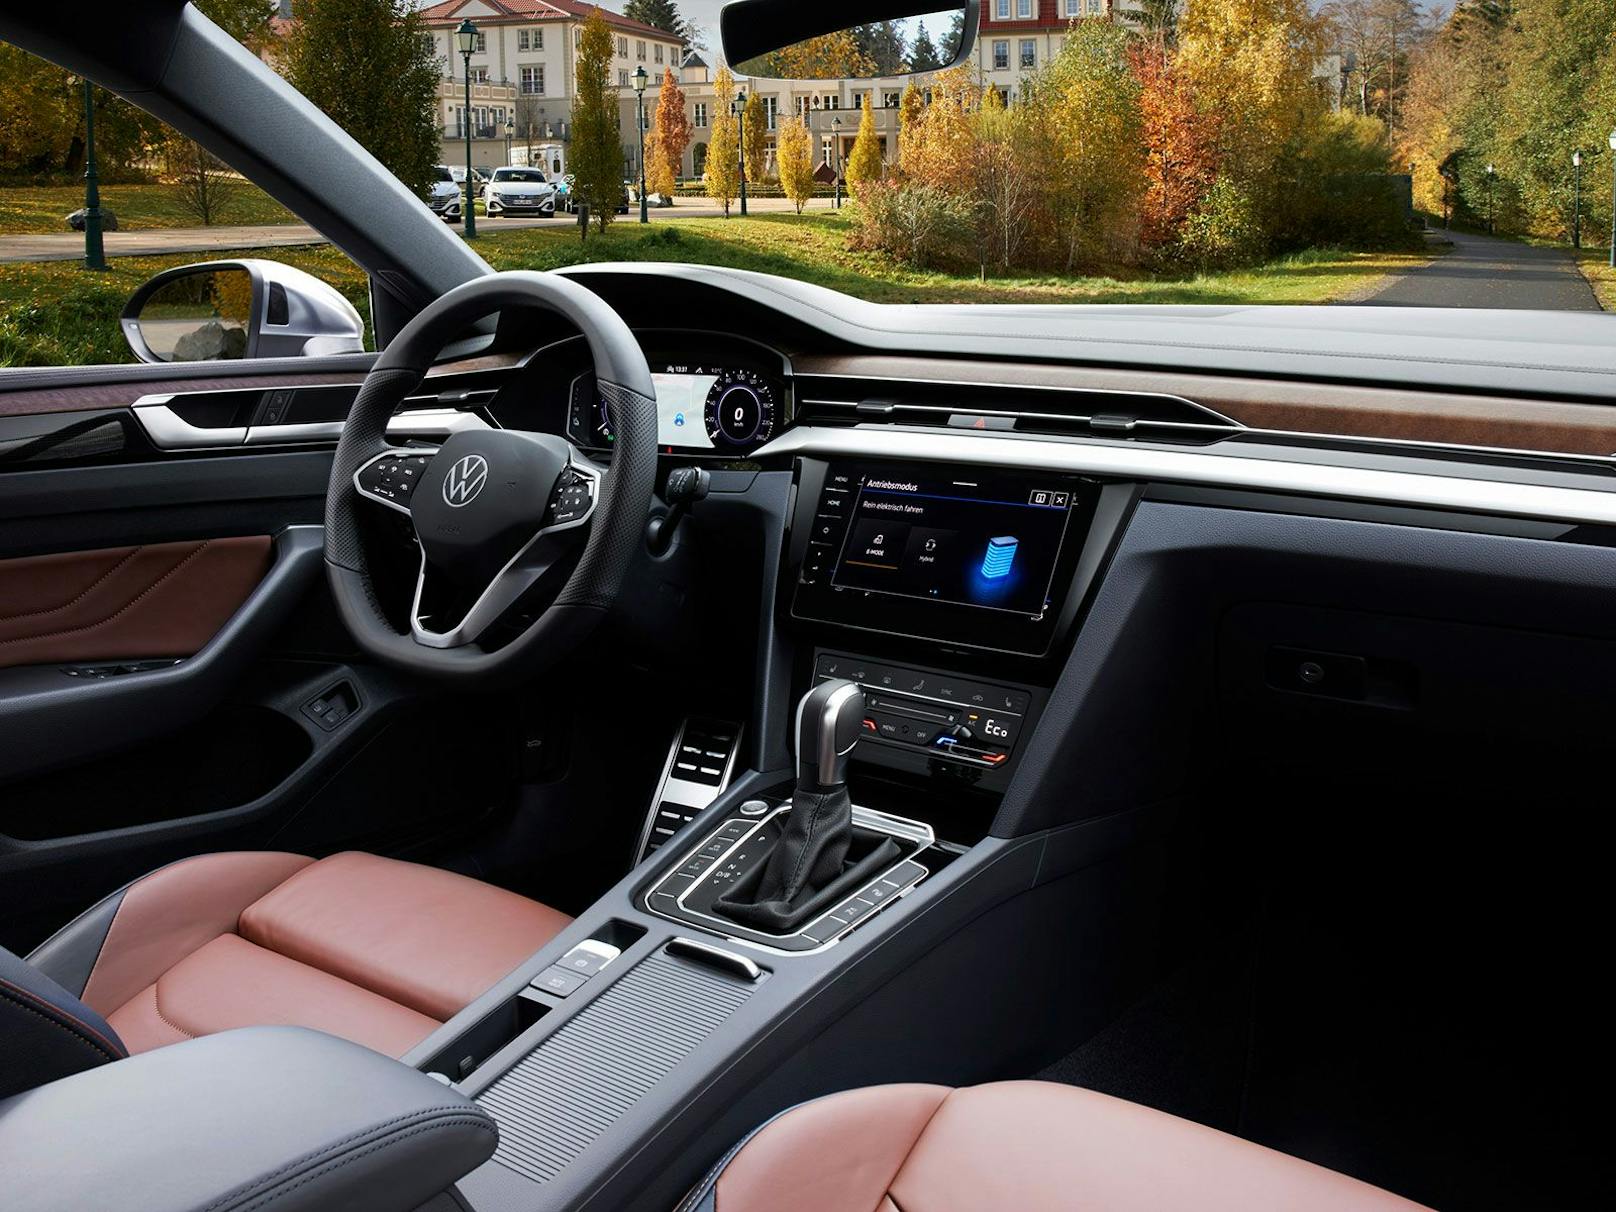 Luxuriöser Innenraum im Stil des VW Passat